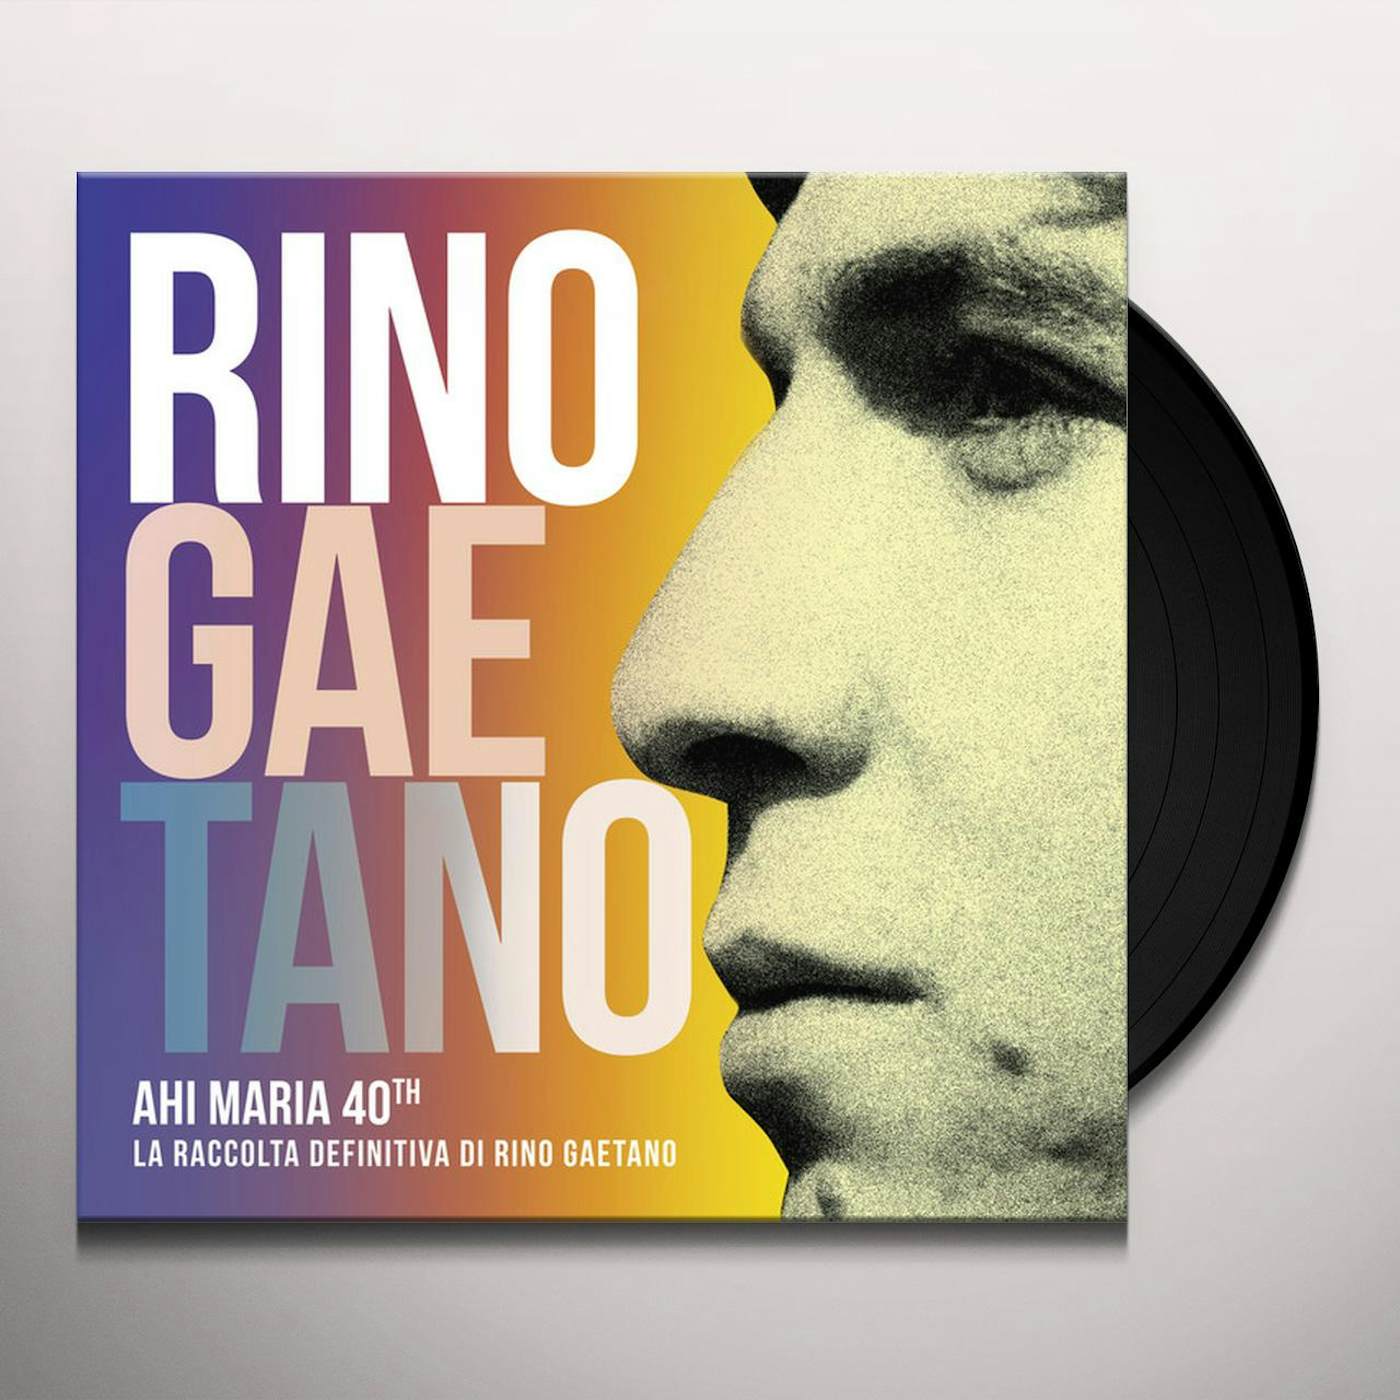 Rino Gaetano AHI MARIA 40TH CD